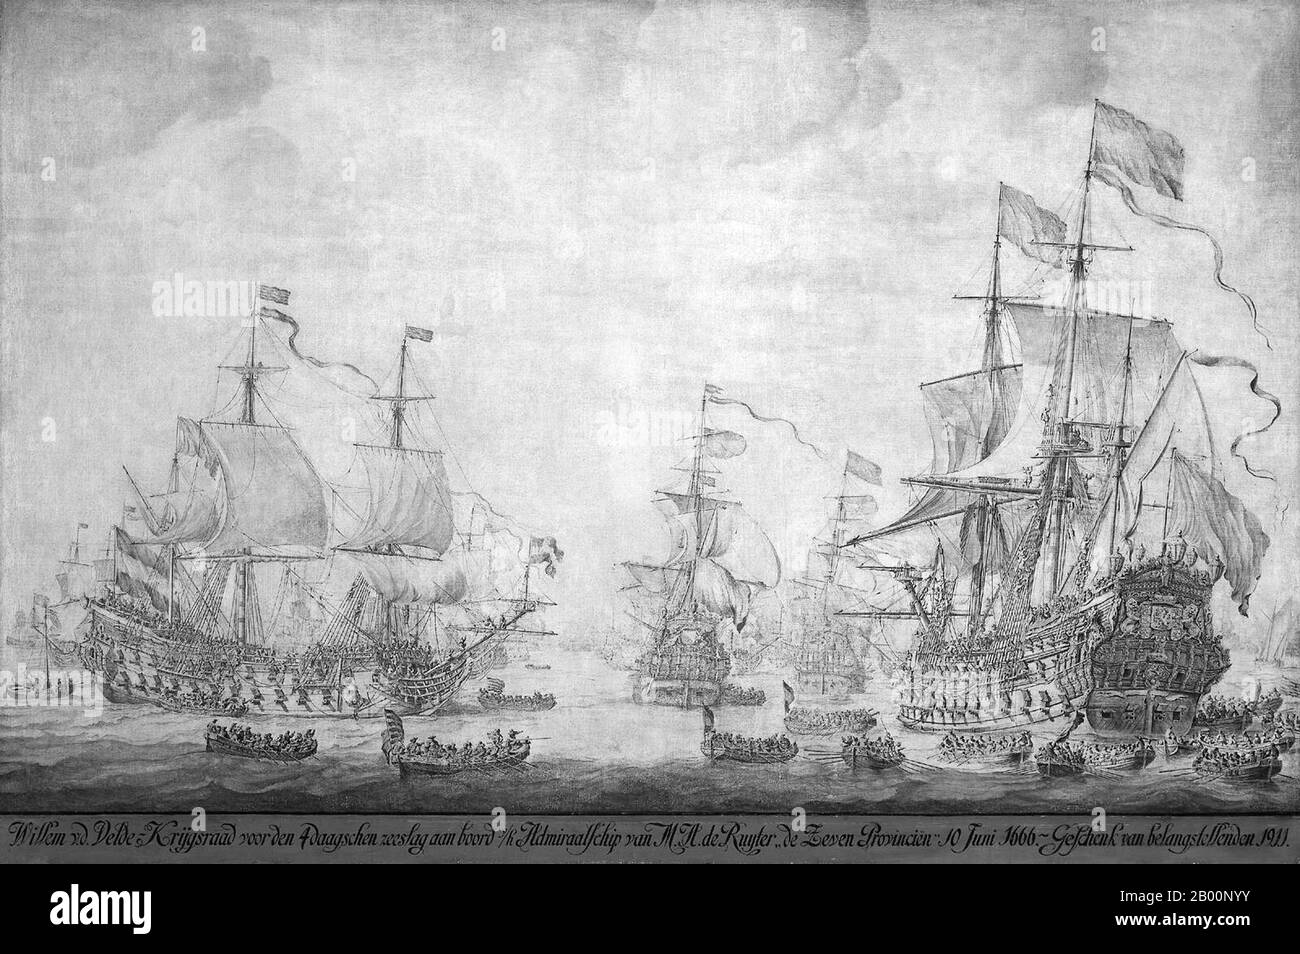 Pays-Bas: 'Conseil de guerre à bord des 'les sept provinces', navire amiral de Michiel Adriaensz de Ruyter, 10 juin 1666, précédant la bataille de quatre jours'. Peinture à l'encre sur toile par Willem van de Velde The Elder (c. 1611-1693), fin du xviie siècle. La bataille de quatre jours (1-4 juin 1666), également connue sous le nom de combat de quatre jours, était une bataille navale pendant la seconde guerre anglo-hollandaise. Combattu dans le sud de la mer du Nord, il a commencé au large de la côte flamande avant de se terminer près de la côte anglaise, l'un des plus longs engagements navals de l'histoire. Ce fut une victoire hollandaise, avec des dommages graves infligés à la flotte anglaise. Banque D'Images